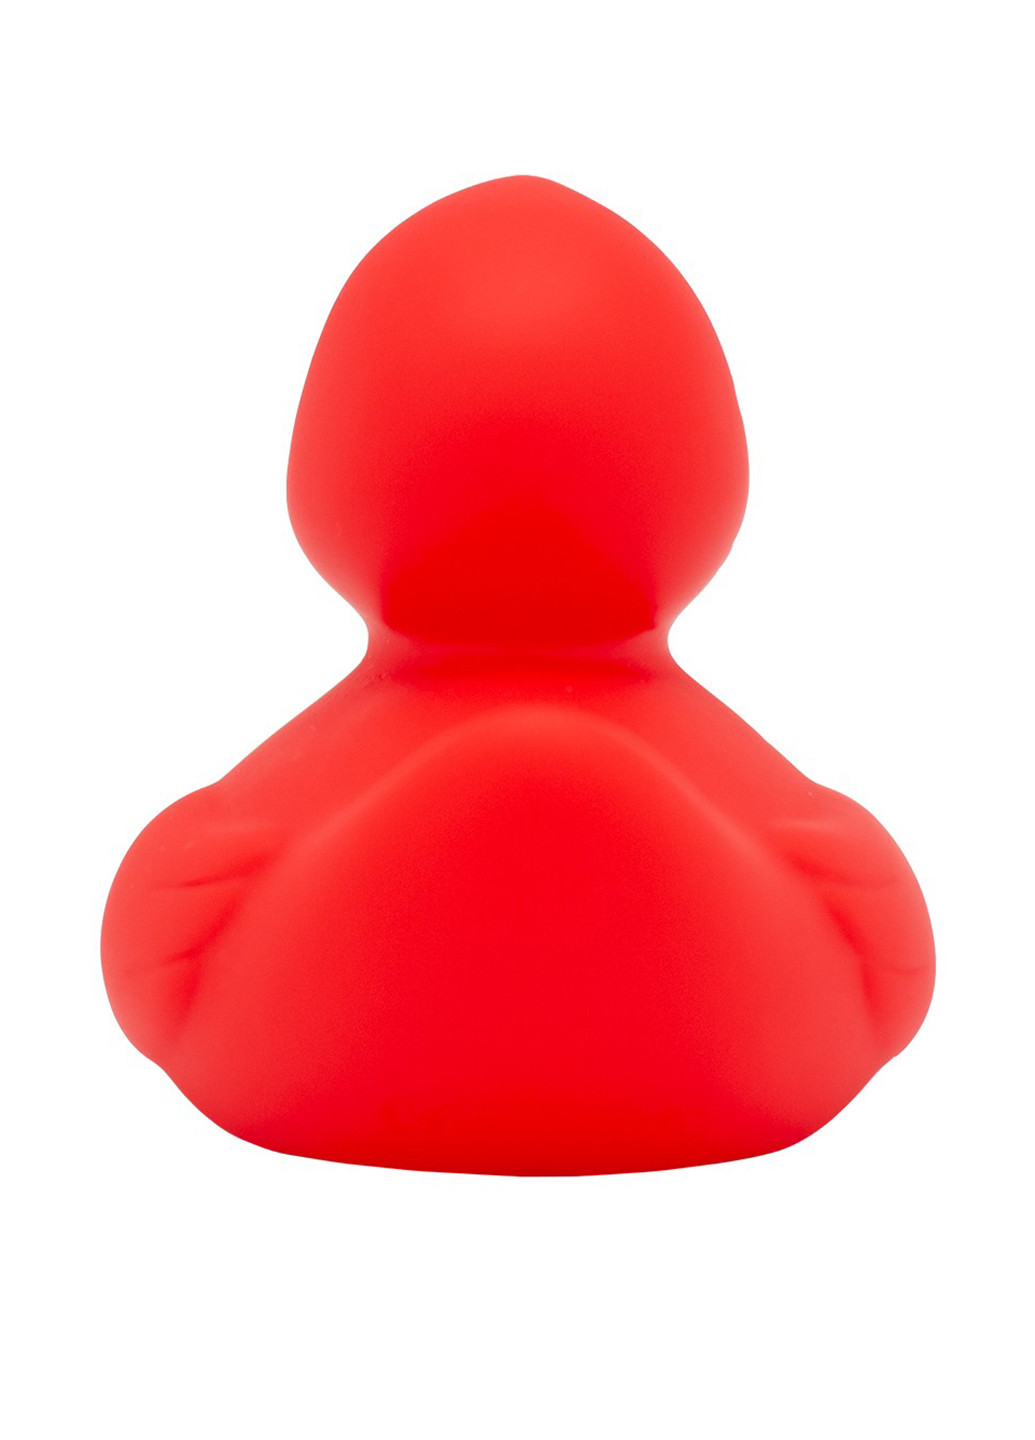 Игрушка для купания Утка, 8,5x8,5x7,5 см Funny Ducks (250618738)